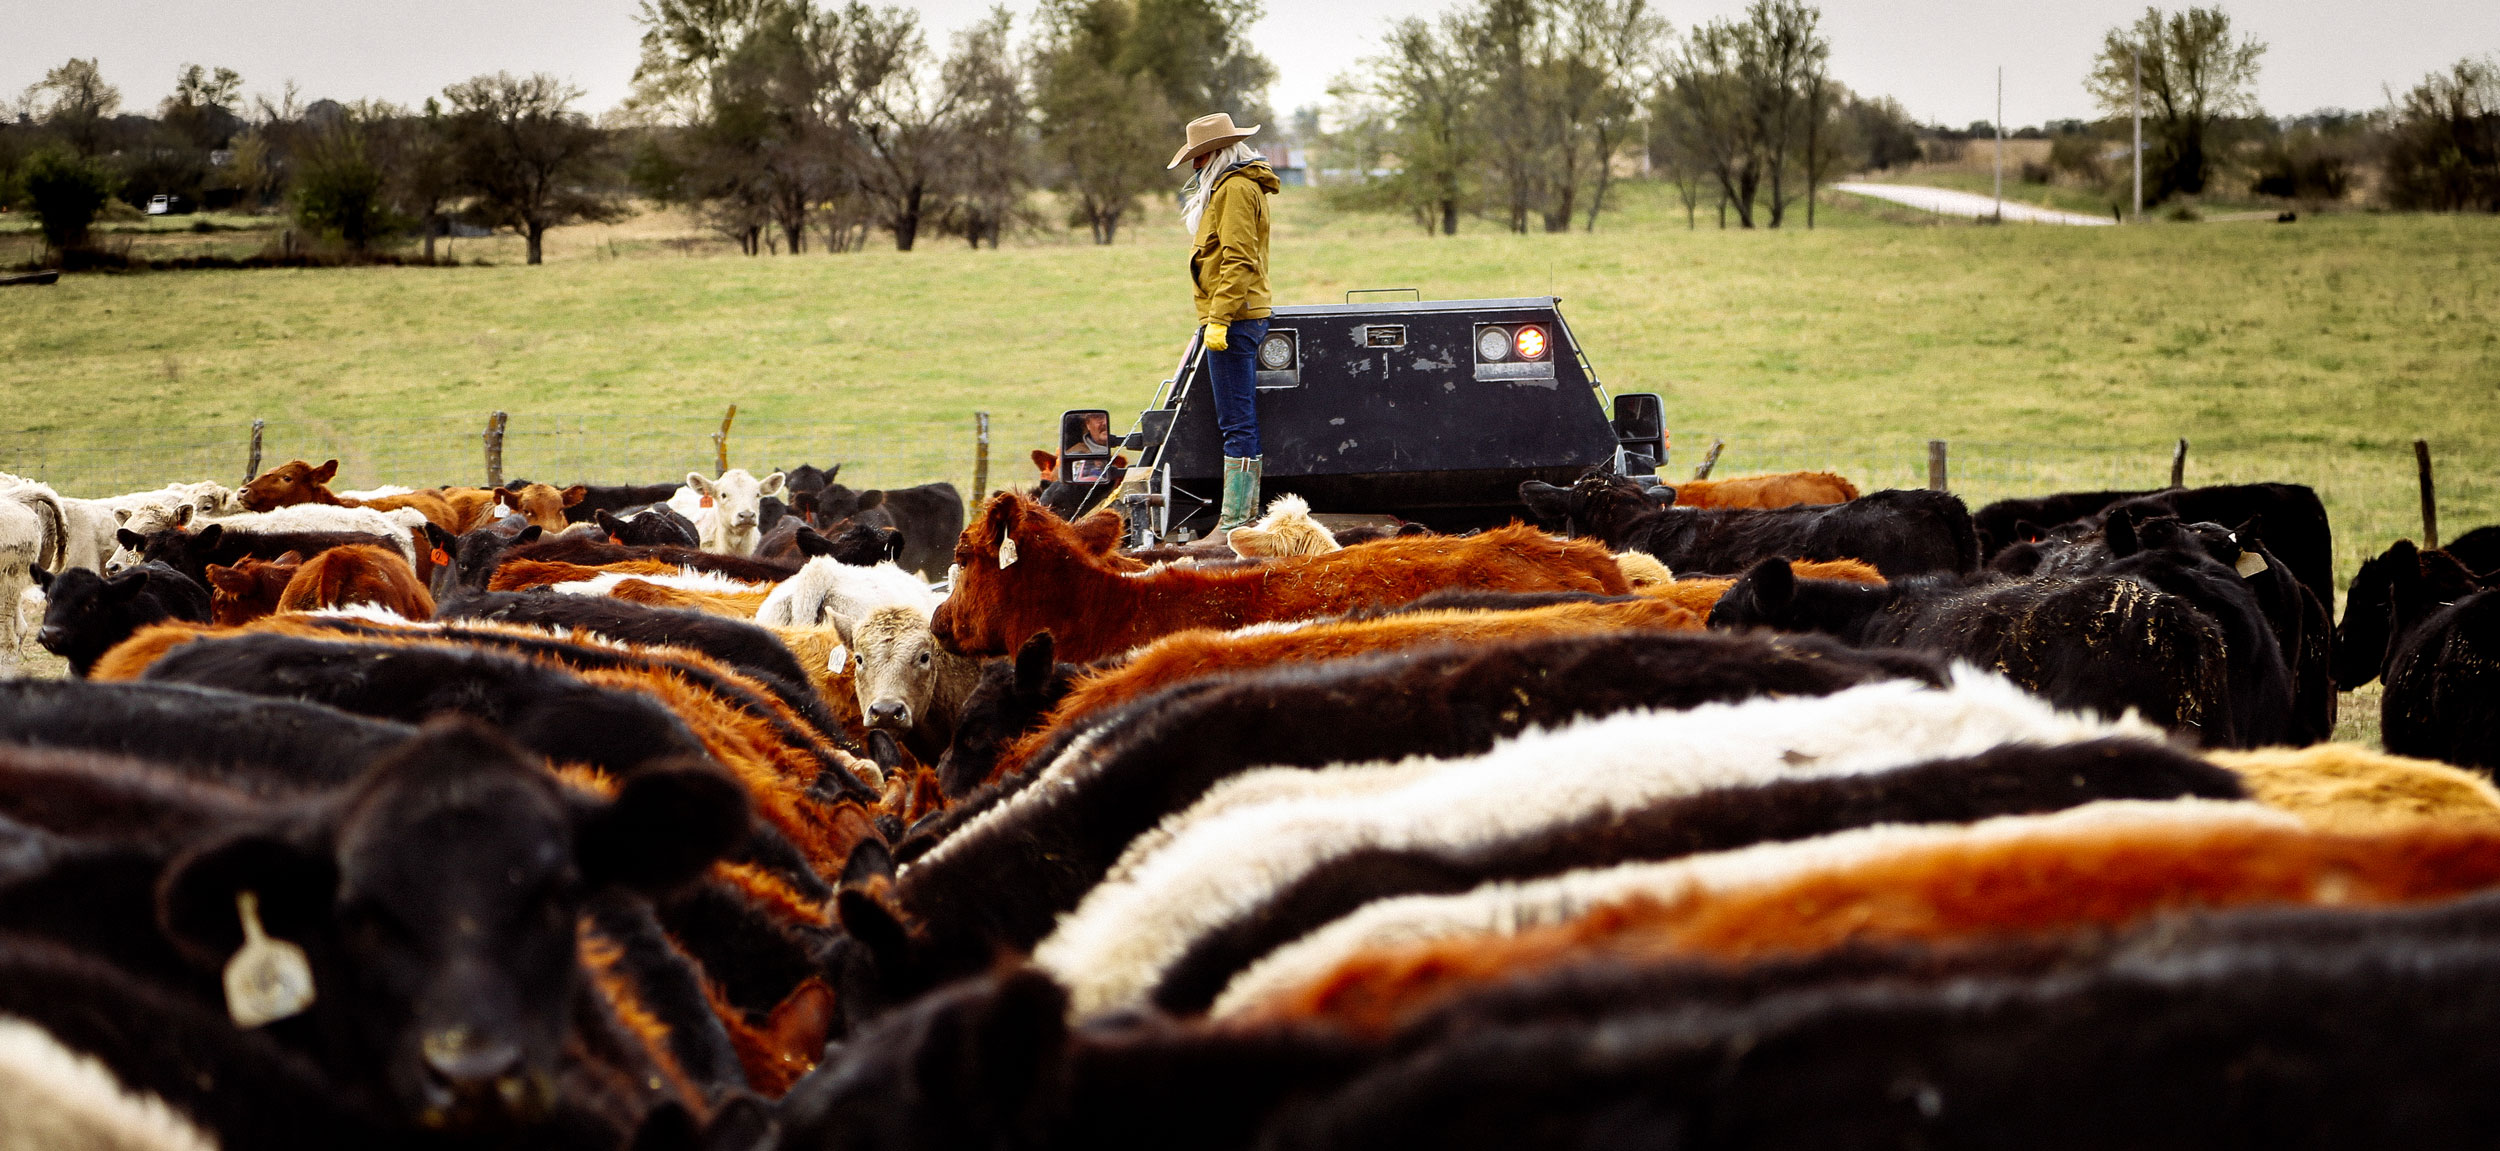 Alex Templeton de pie sobre una máquina agrícola cerca de muchas vacas